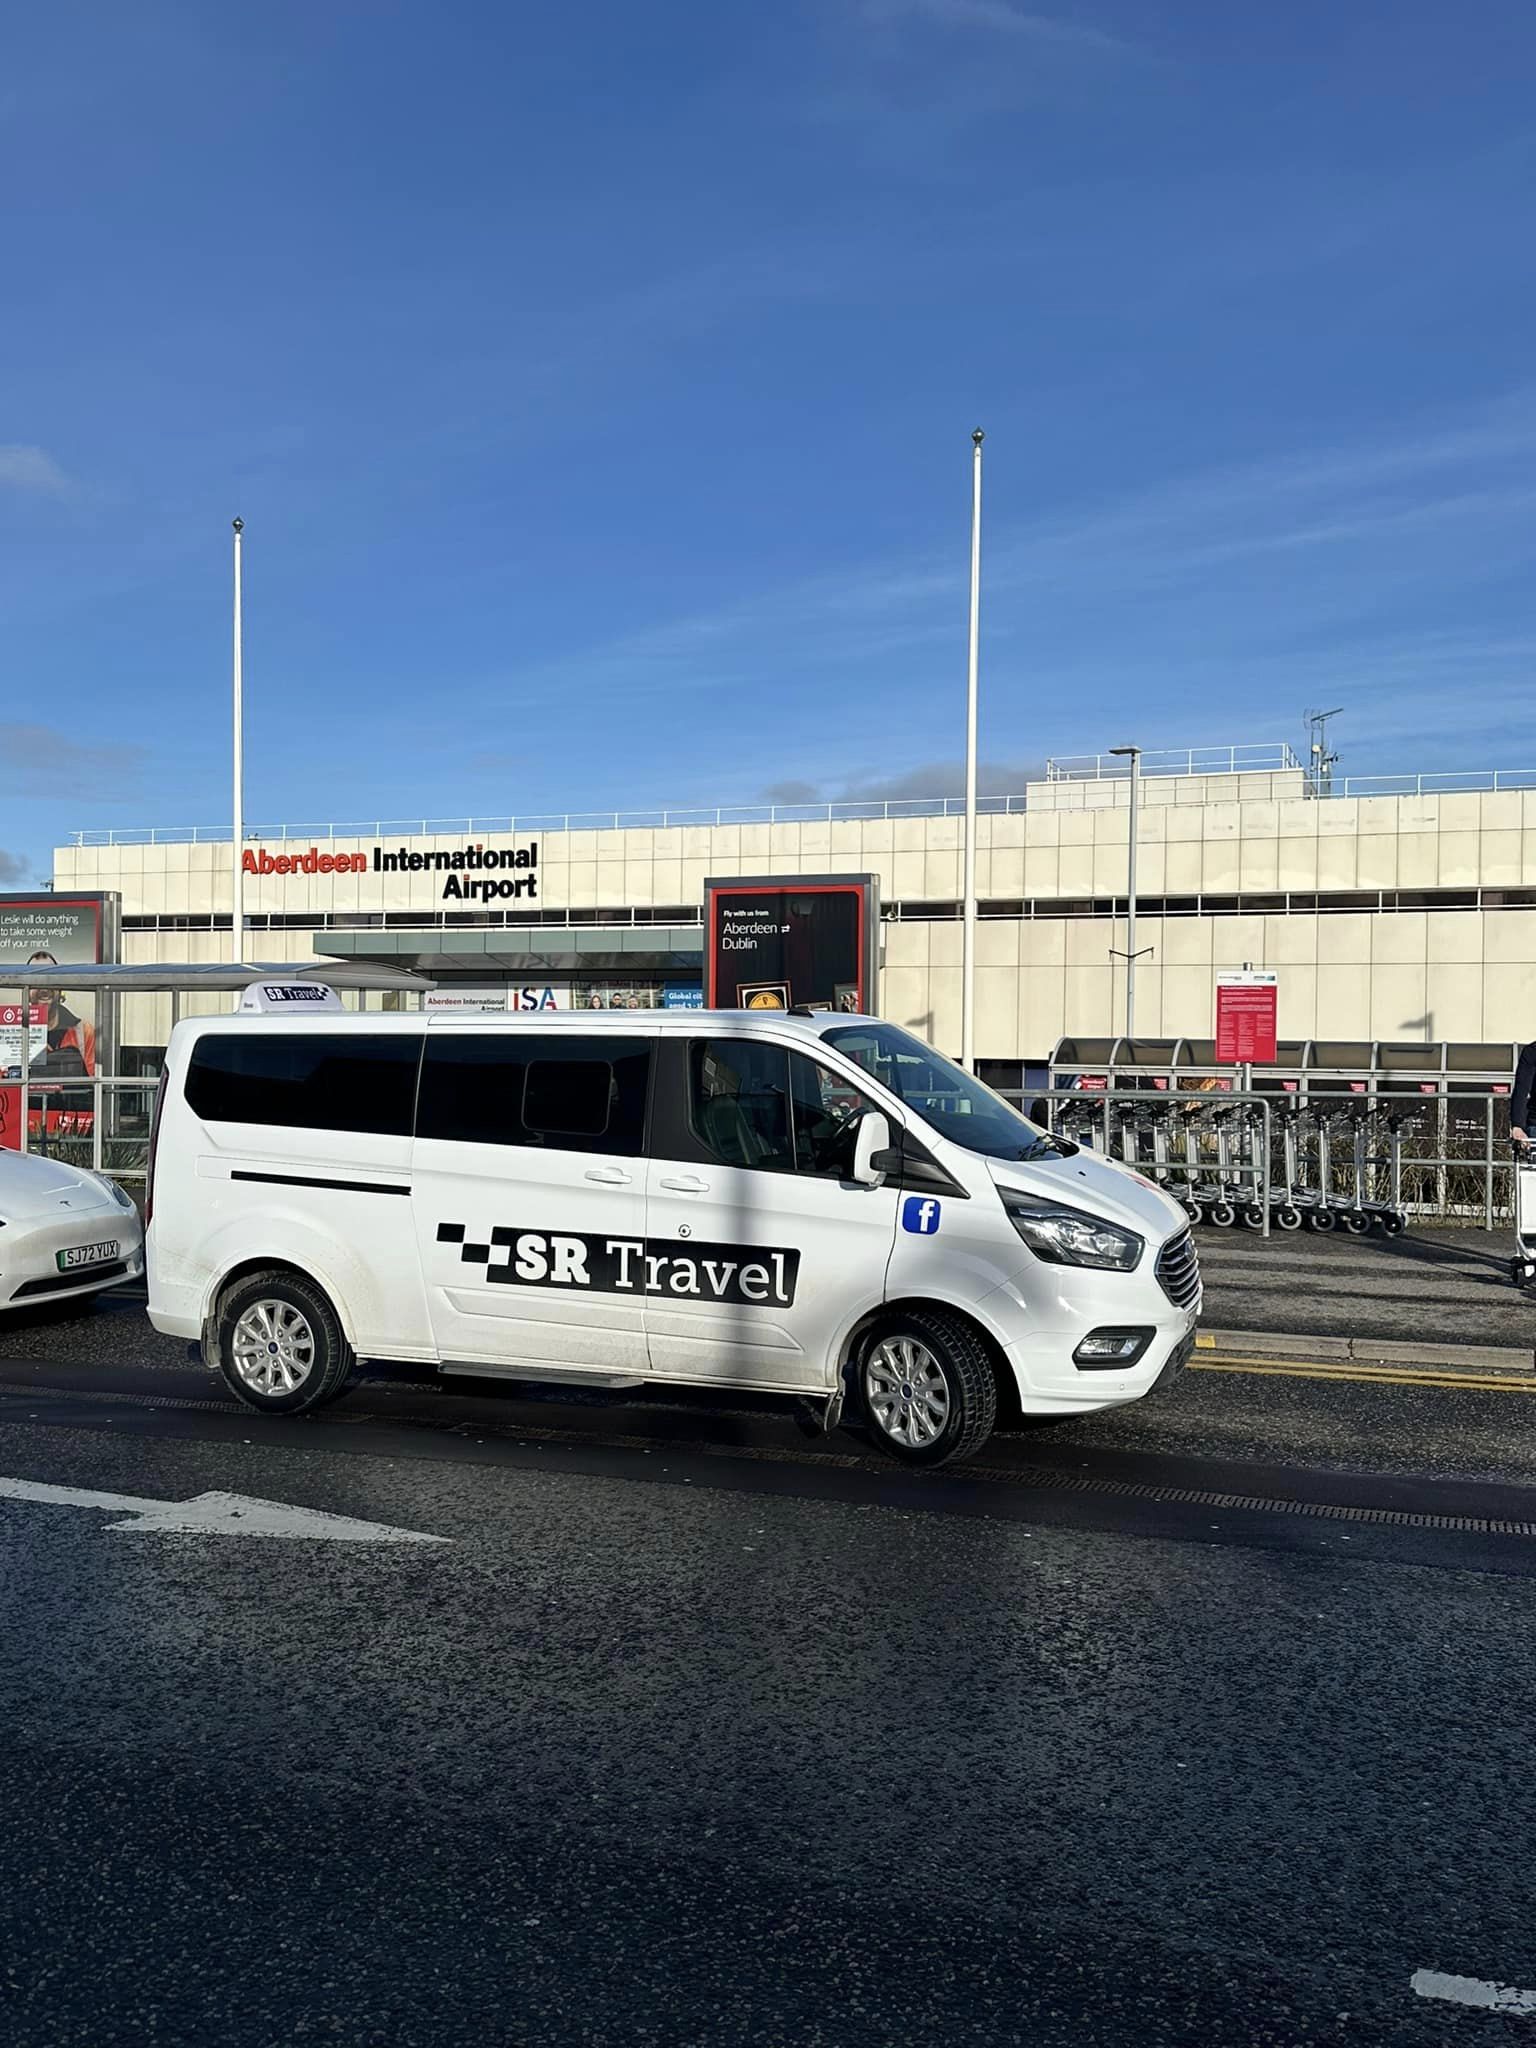 Aberdeen airport transfer service